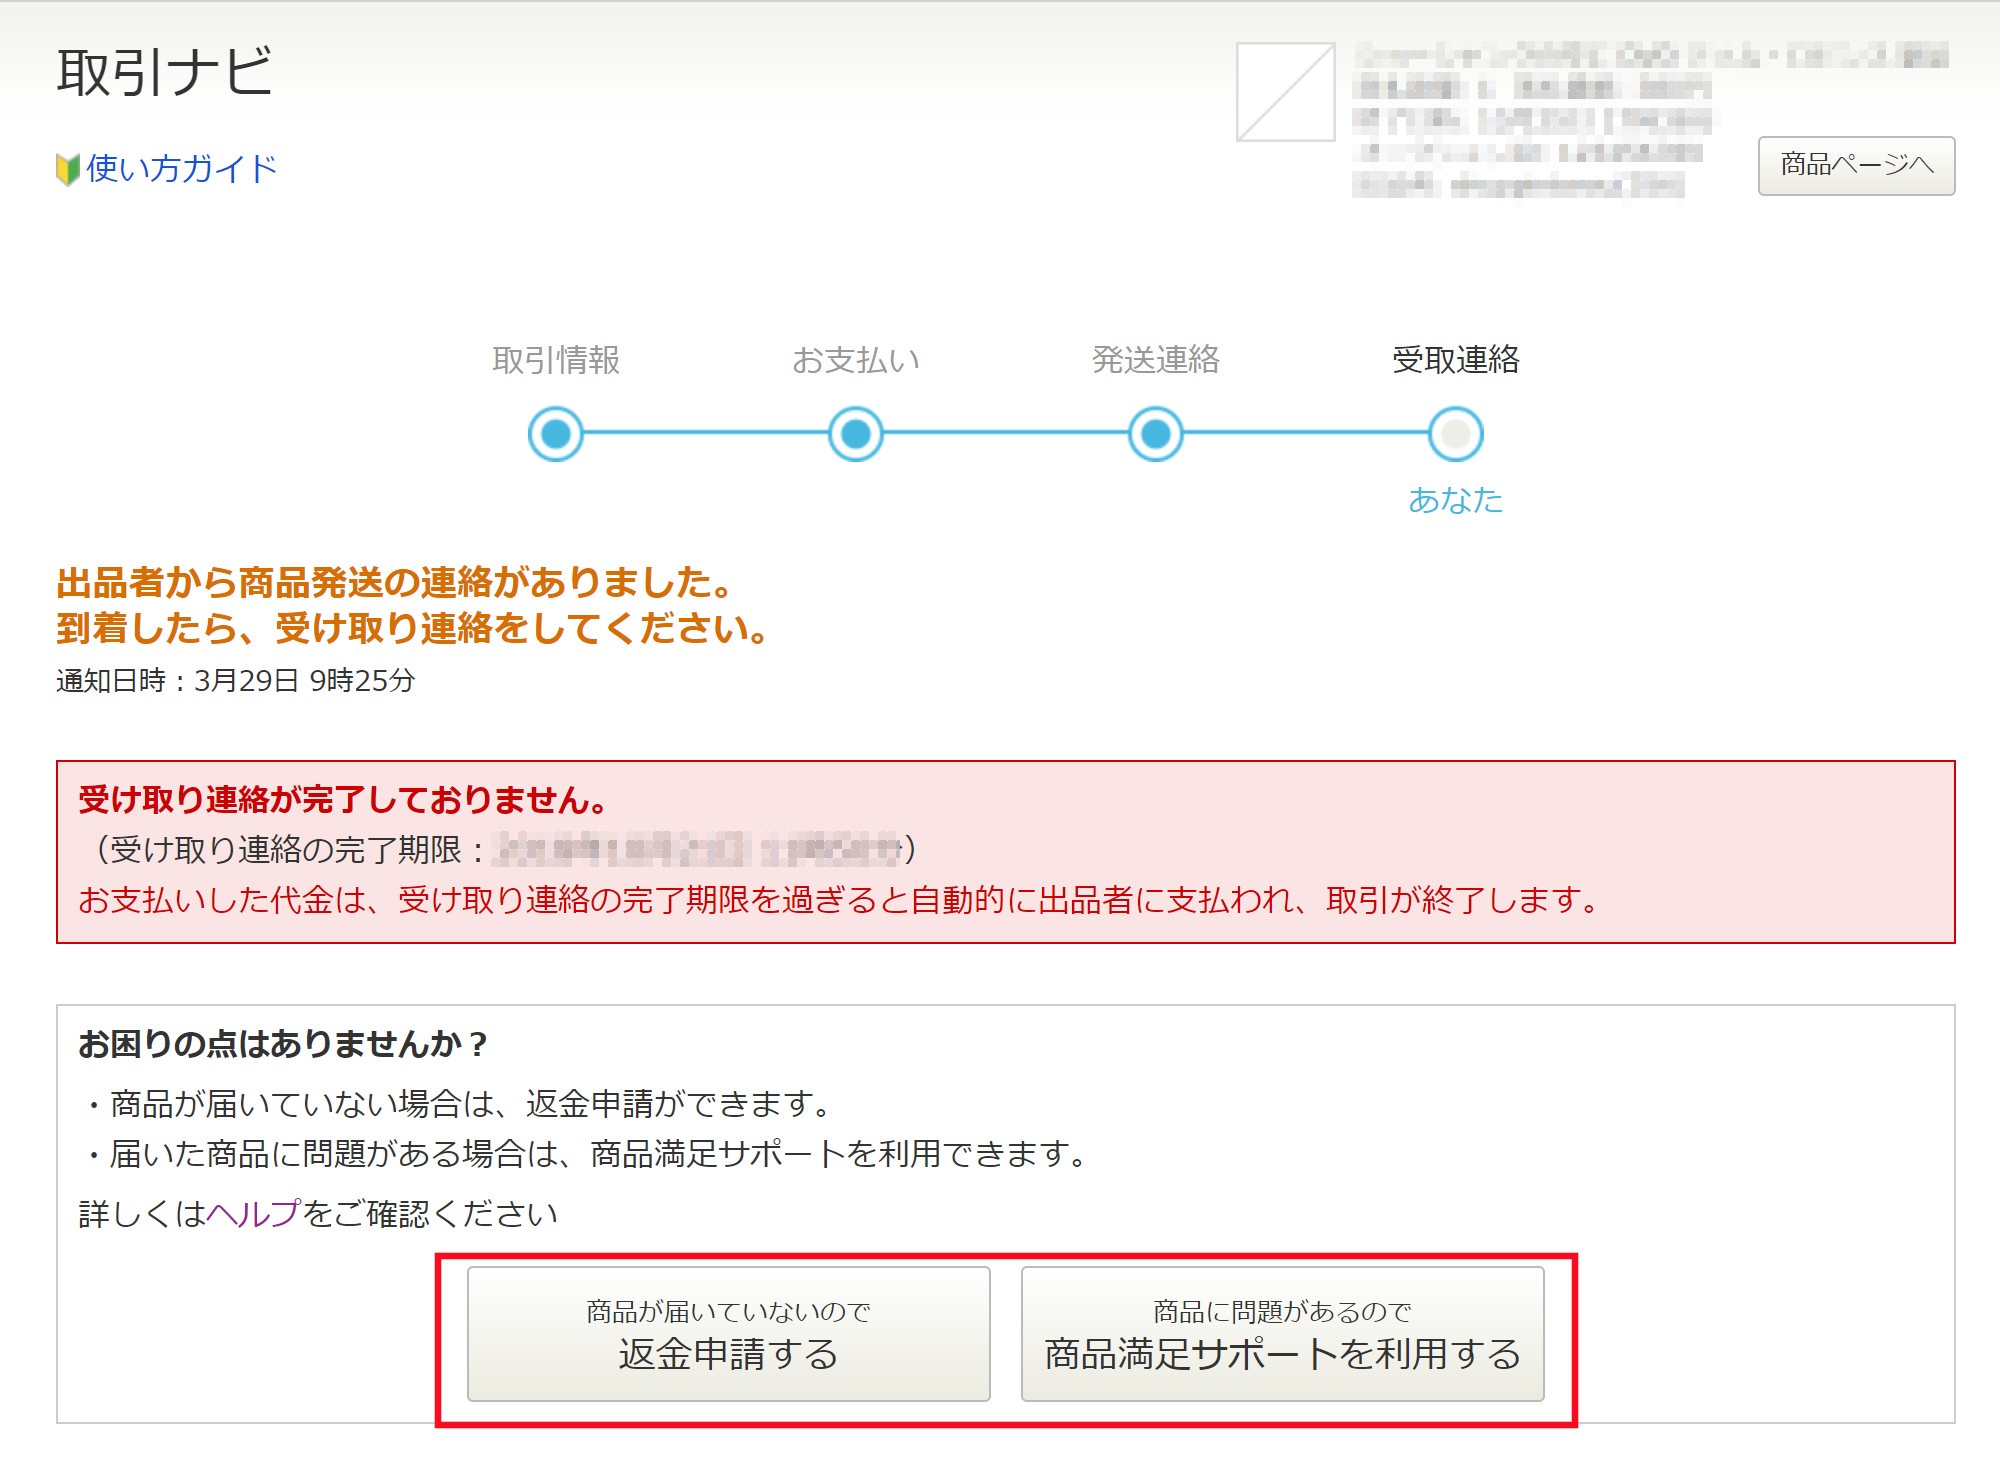 Yahoo! JAPANに返金やお見舞いを申請する方法